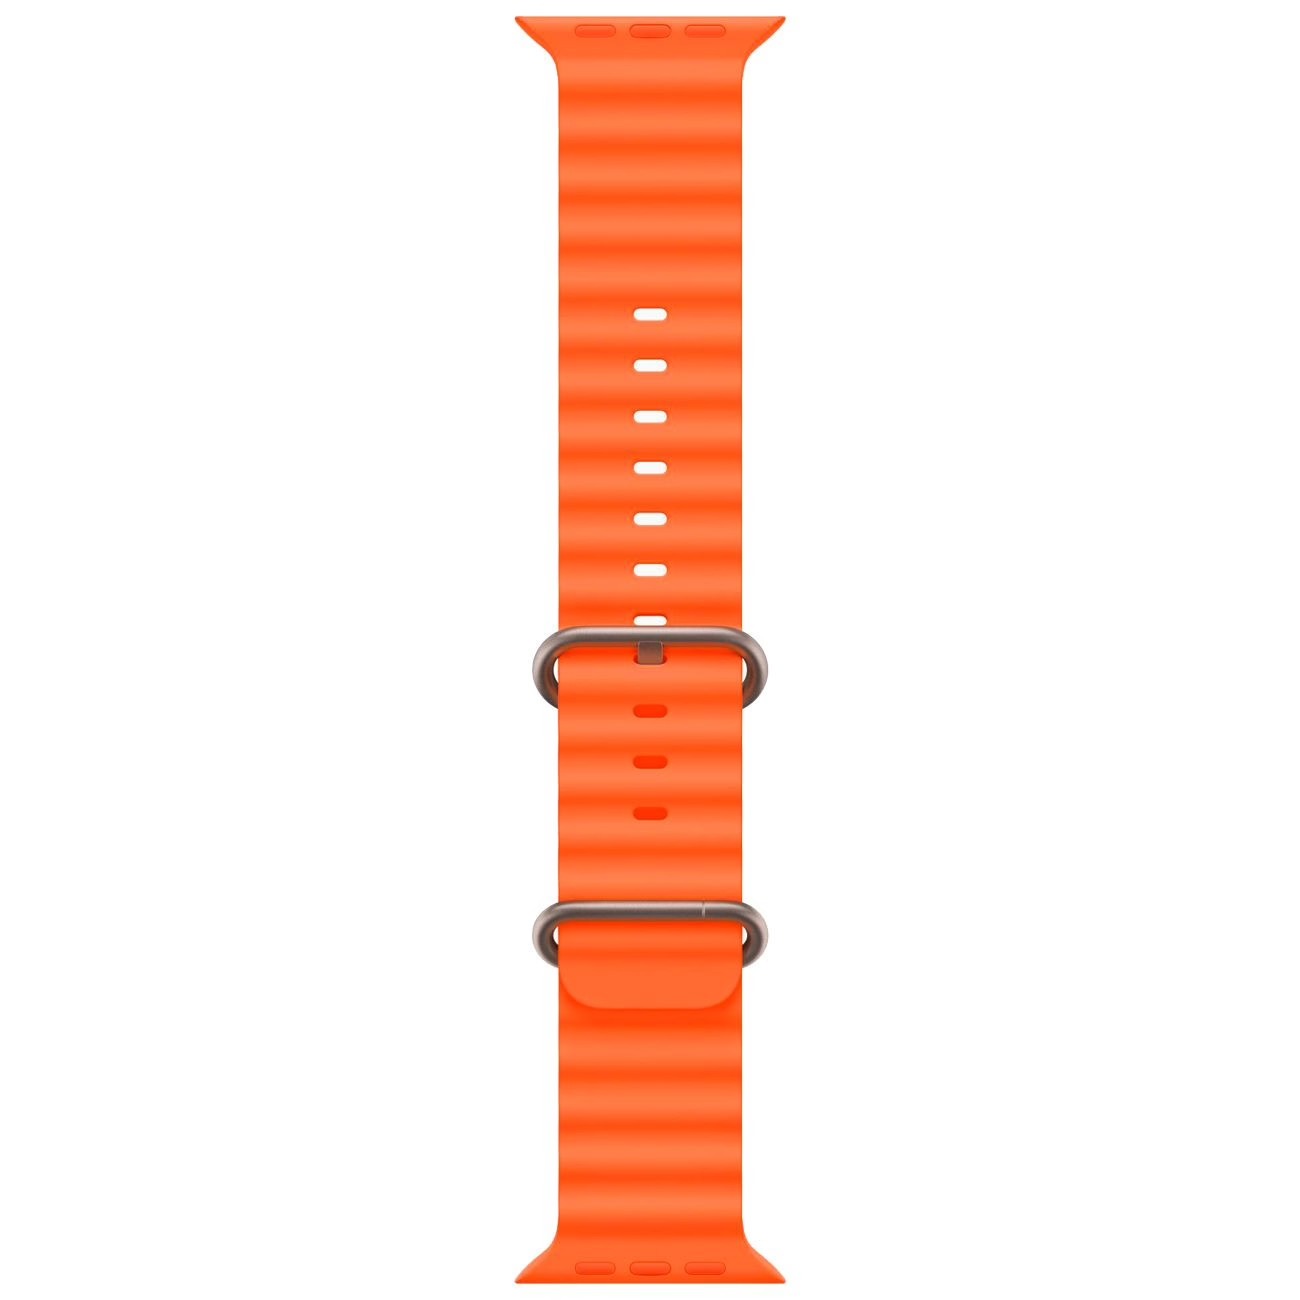 Купить смарт-часы apple watch ultra 2 ocean band orange Apple Watch Ultra 2 в официальном магазине Apple, Samsung, Xiaomi. iPixel.ru Купить, заказ, кредит, рассрочка, отзывы,  характеристики, цена,  фотографии, в подарок.